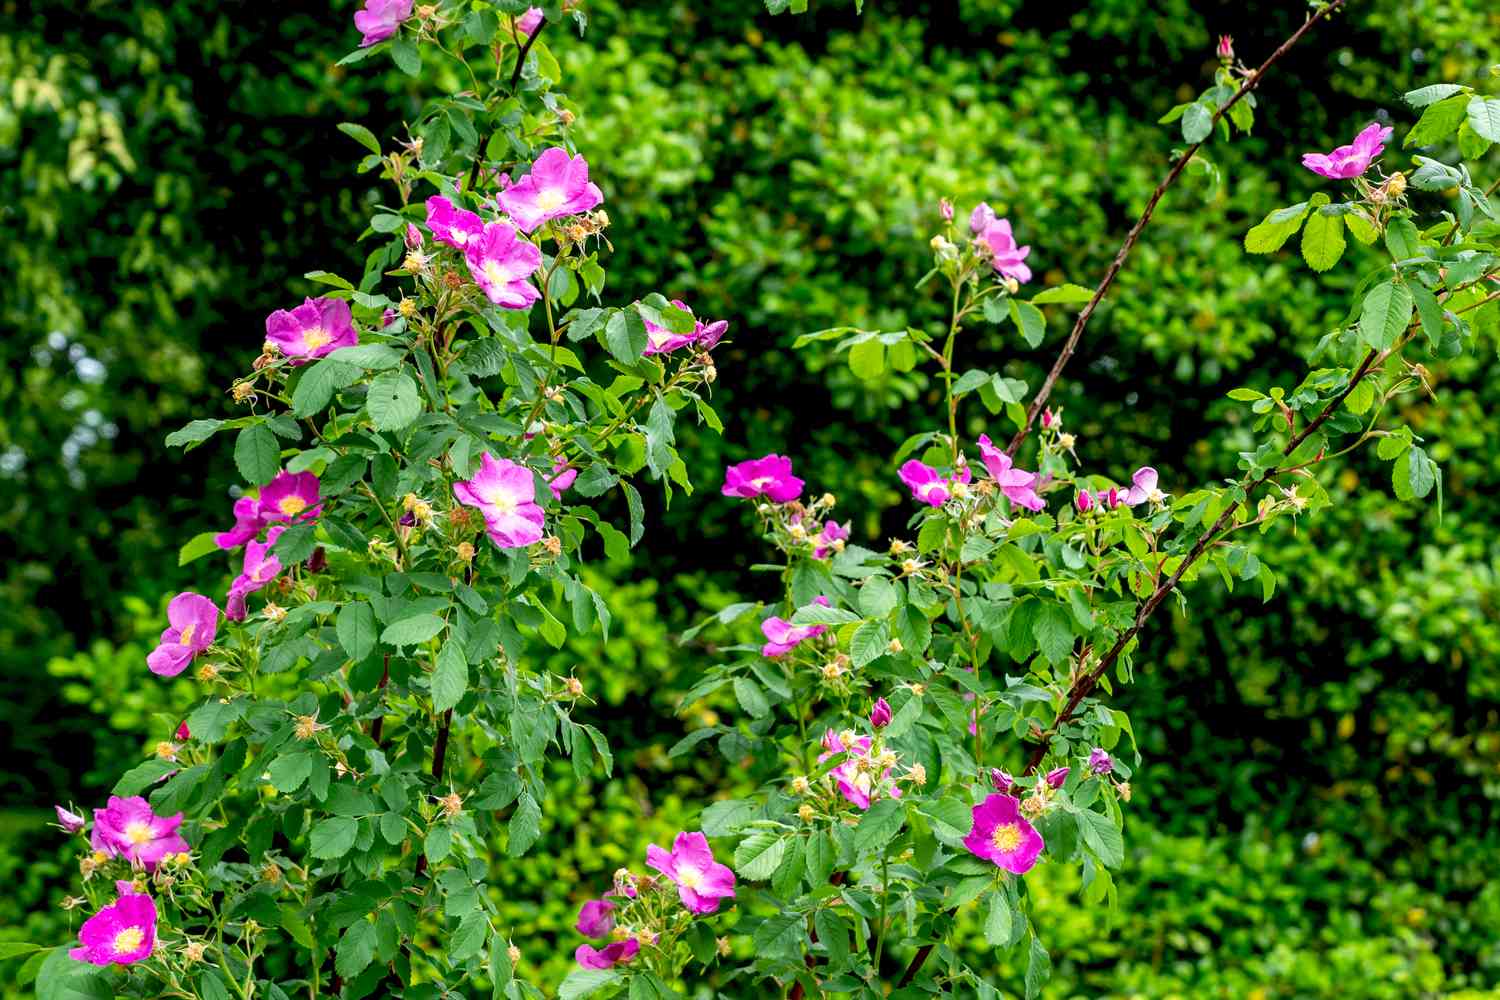 Carolina-Rosenstrauch mit hohen Zweigen und großen rosa Blüten und abgestorbenen Knospen